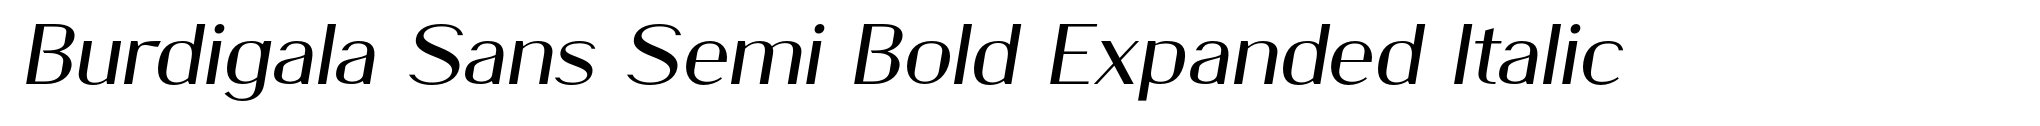 Burdigala Sans Semi Bold Expanded Italic image